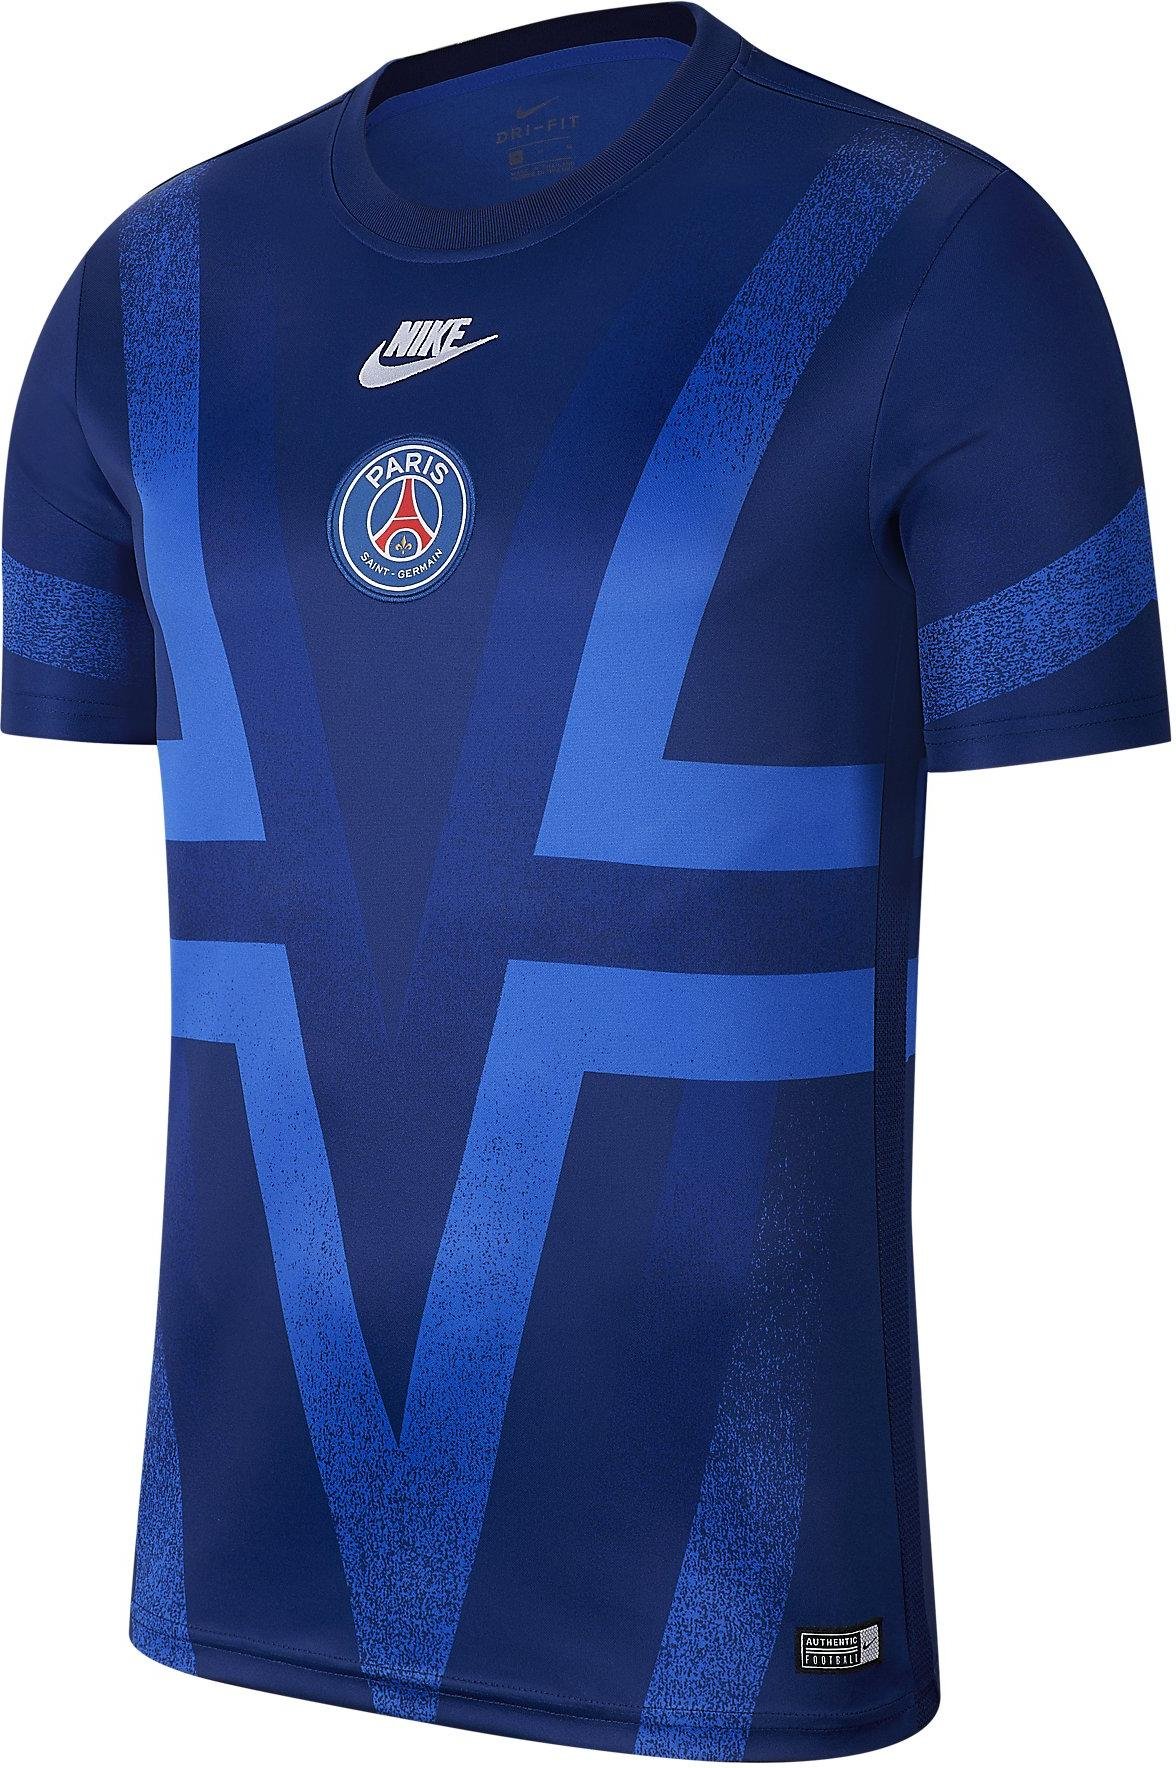 Pánský fotbalový top s krátkým rukávem Nike Paris Saint-Germain